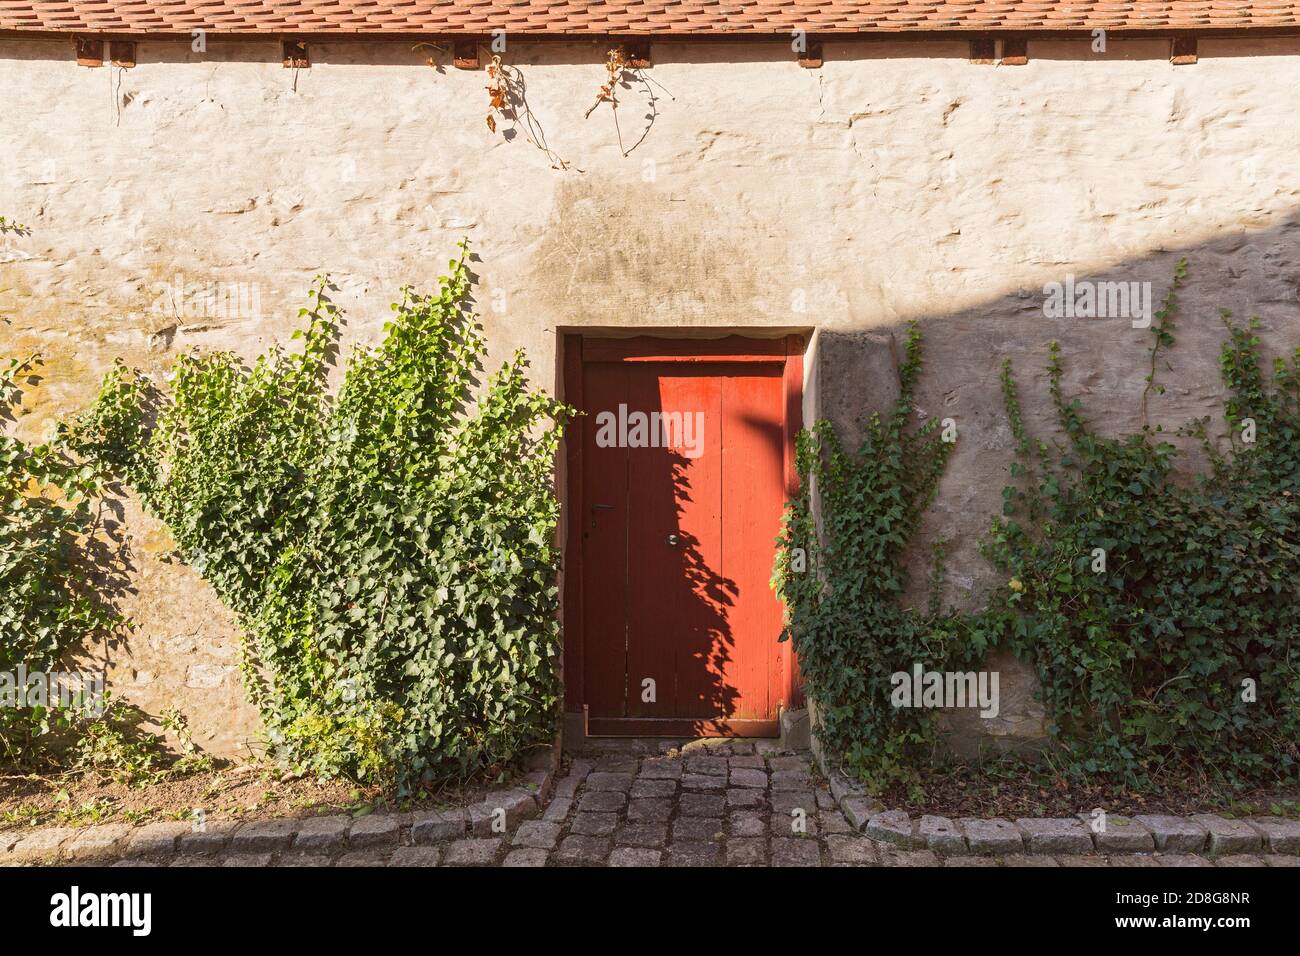 Beilngries, Innerer Graben, Hausmauer, mit Efeu bewachsen, rote Türe Foto de stock